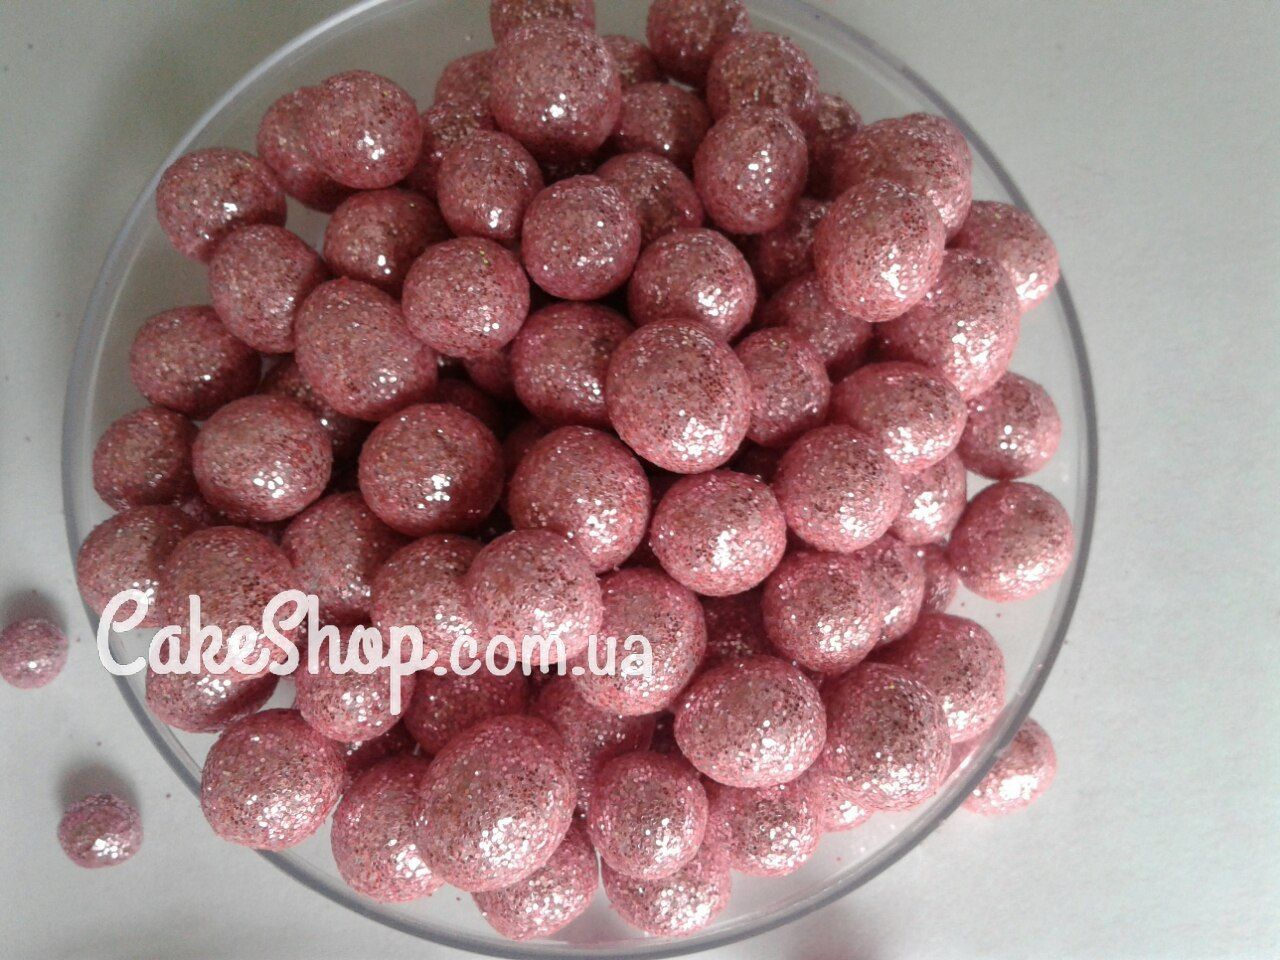 ⋗ Жемчуг сахарный Розовый с блестками 10 мм купить в Украине ➛ CakeShop.com.ua, фото